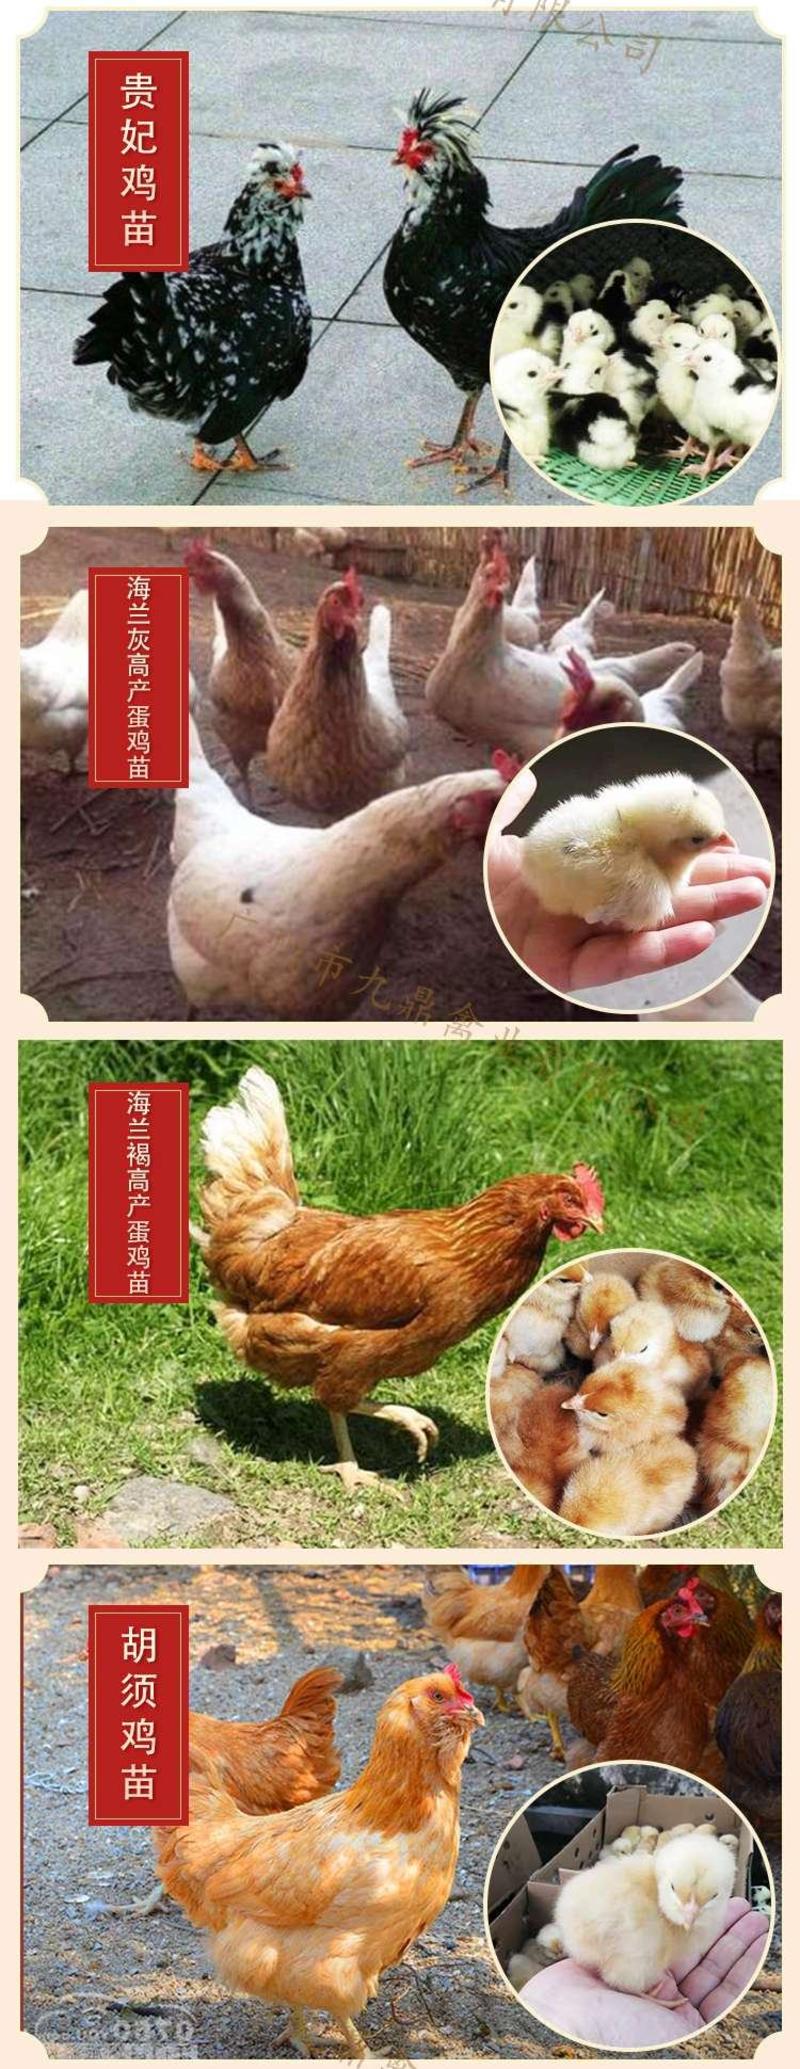 广州孵化出壳快大竹丝鸡苗乌鸡苗乌骨鸡苗包做疫苗运输包活